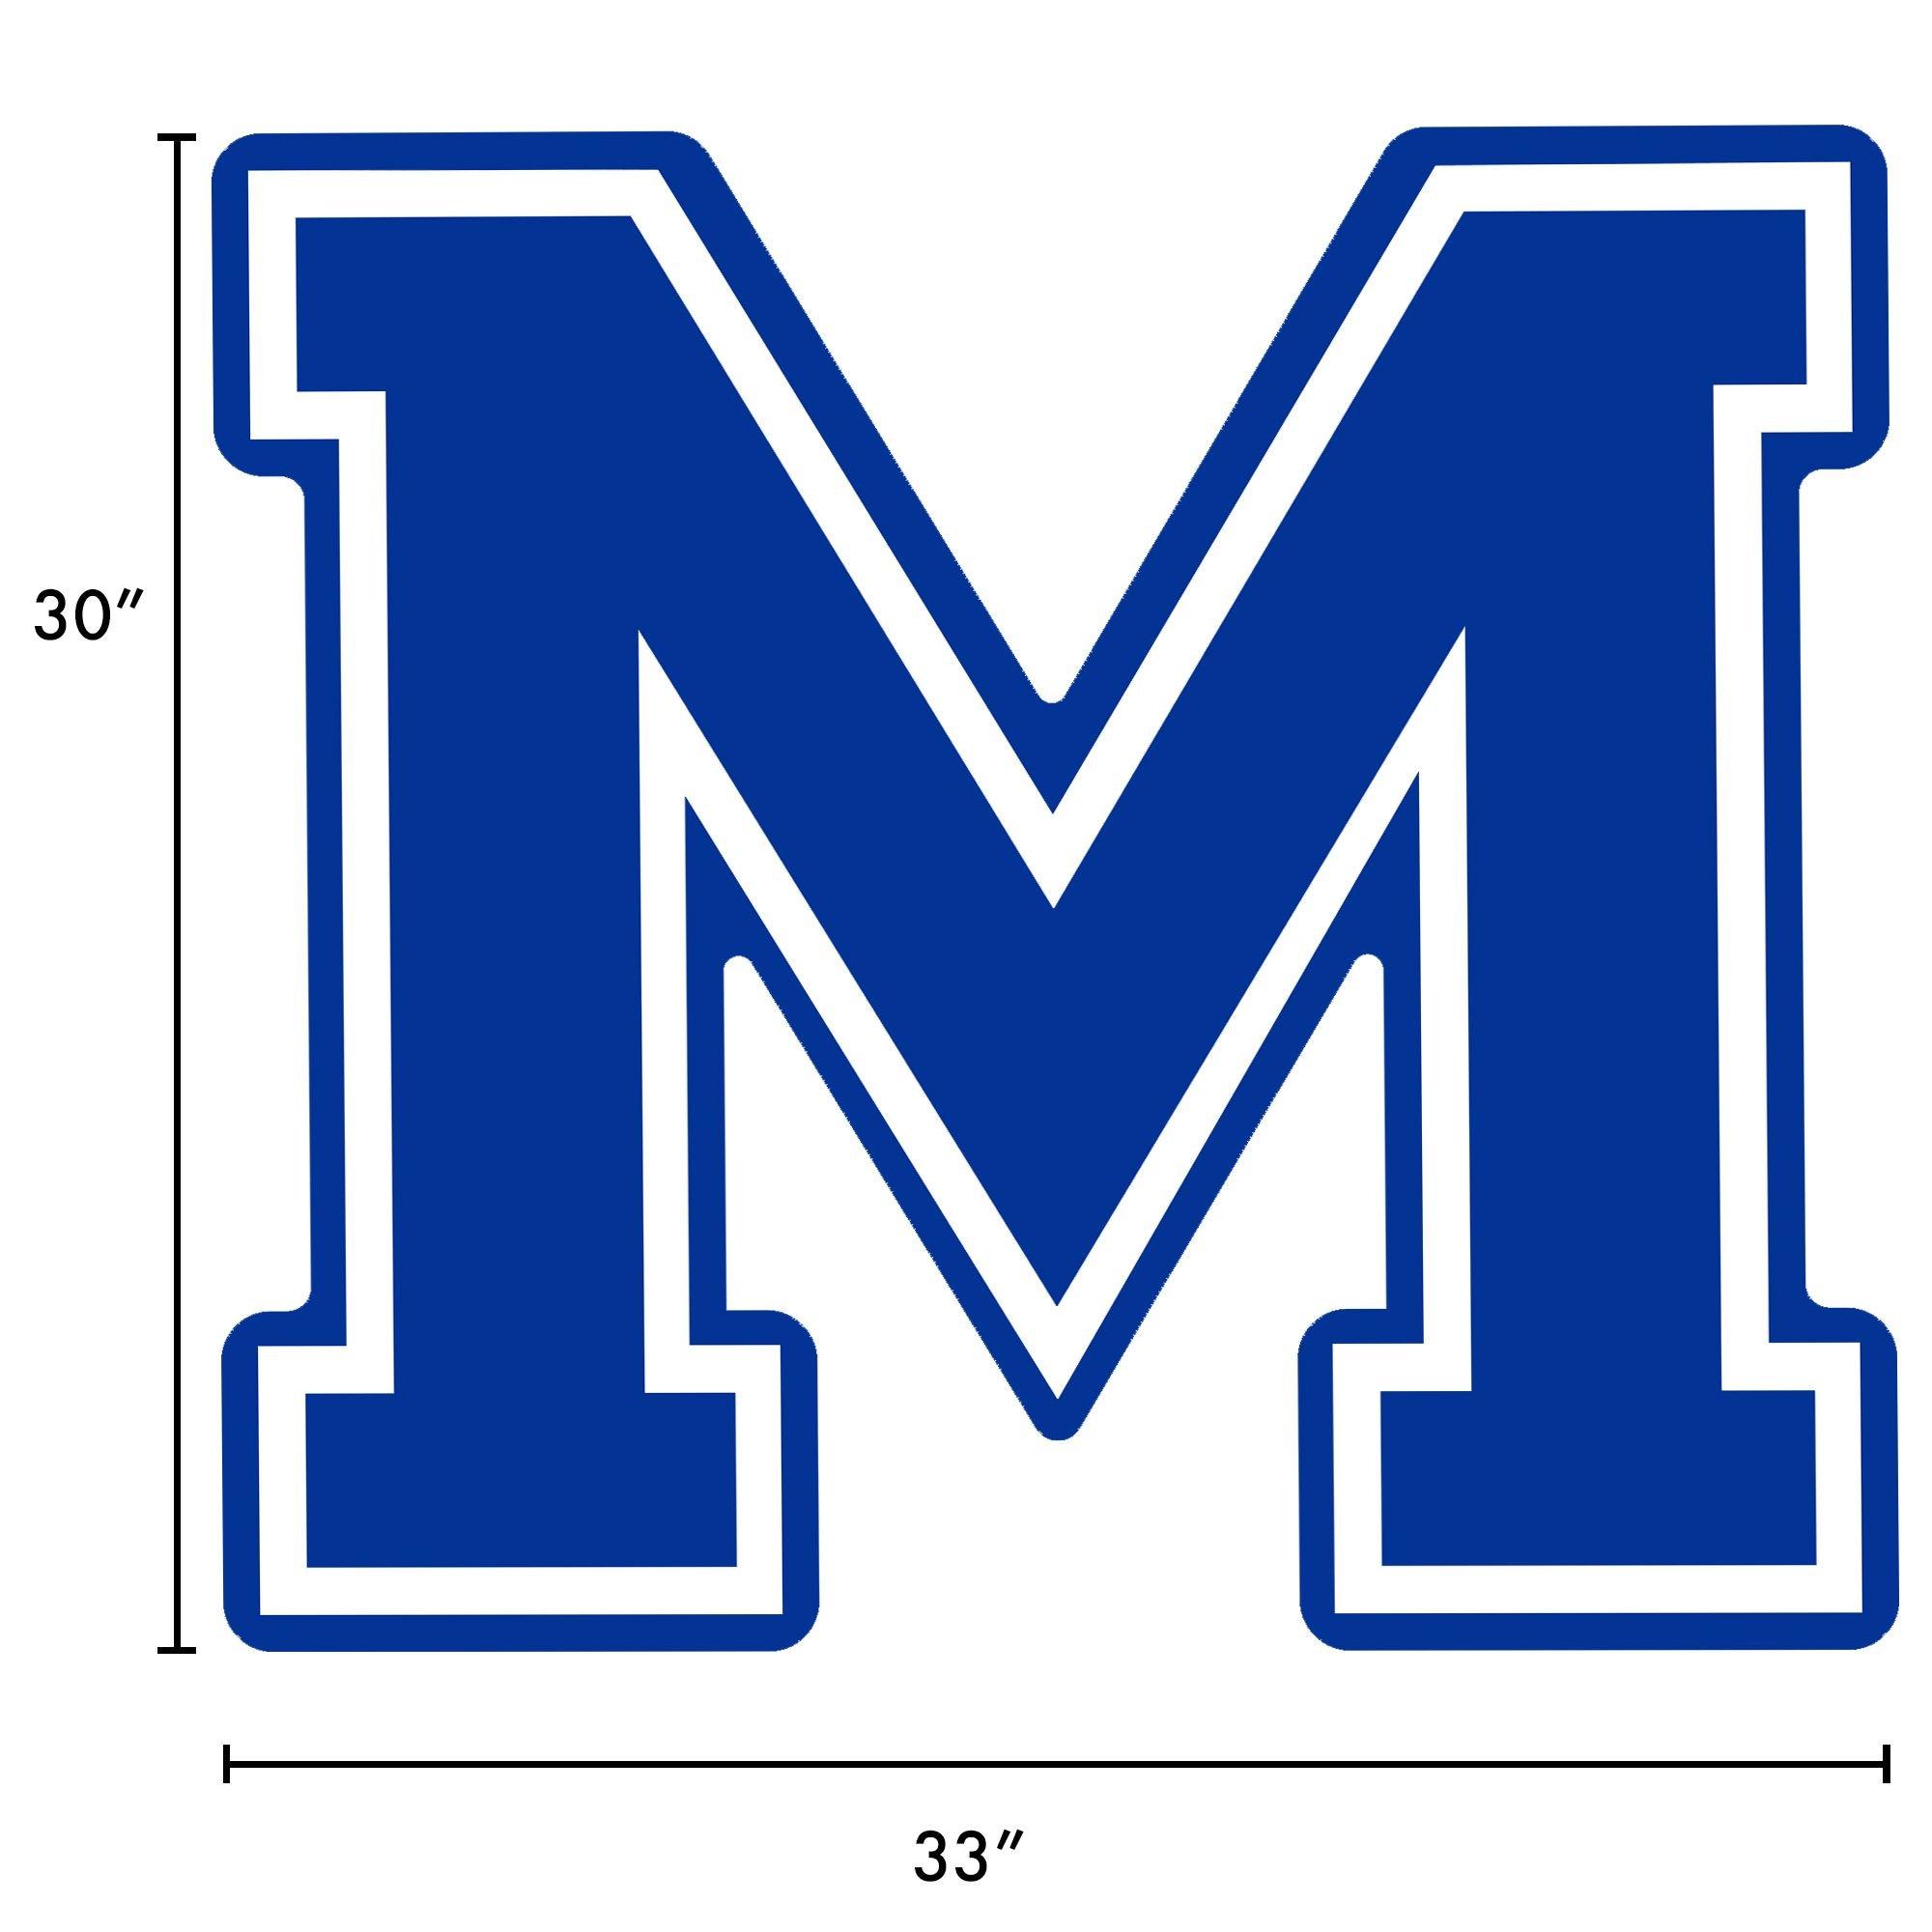 blue letter m